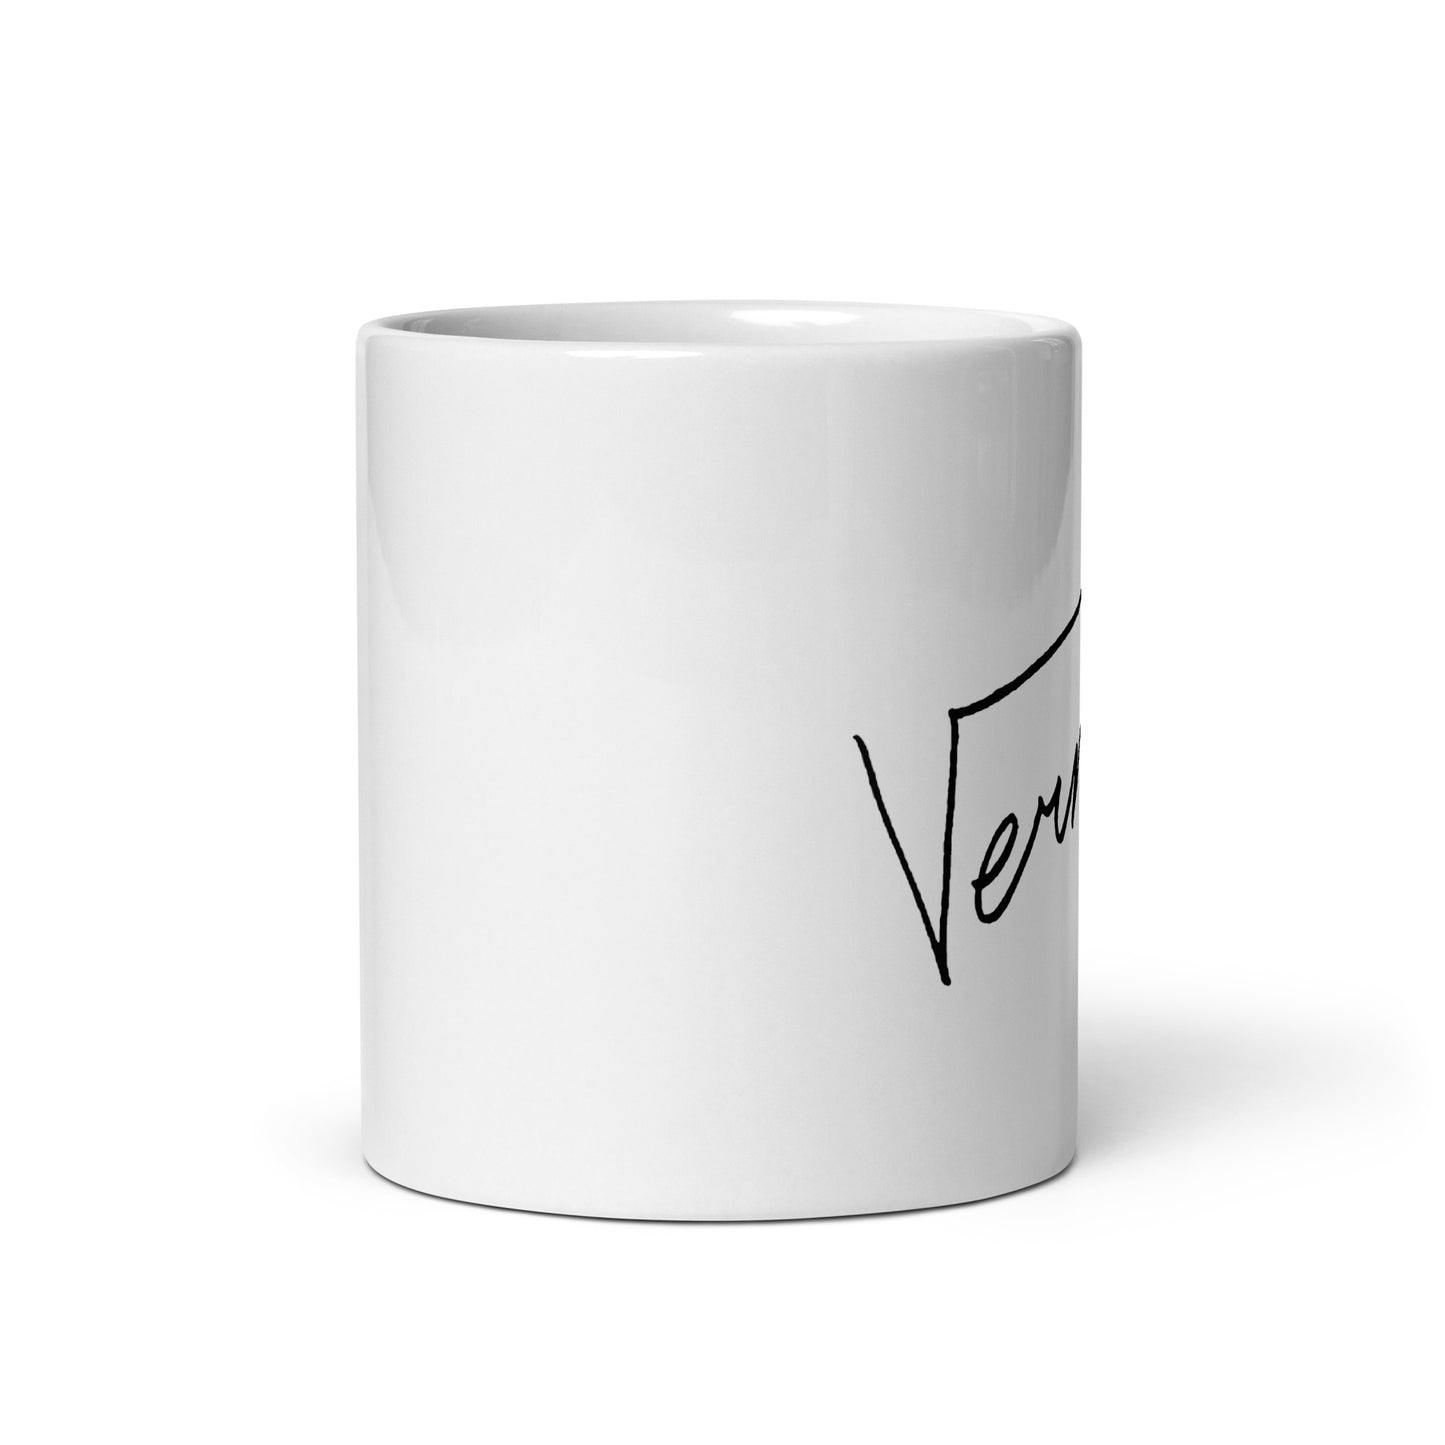 SEVENTEEN Vernon, Hansol Vernon Chwe Signature Ceramic Mug